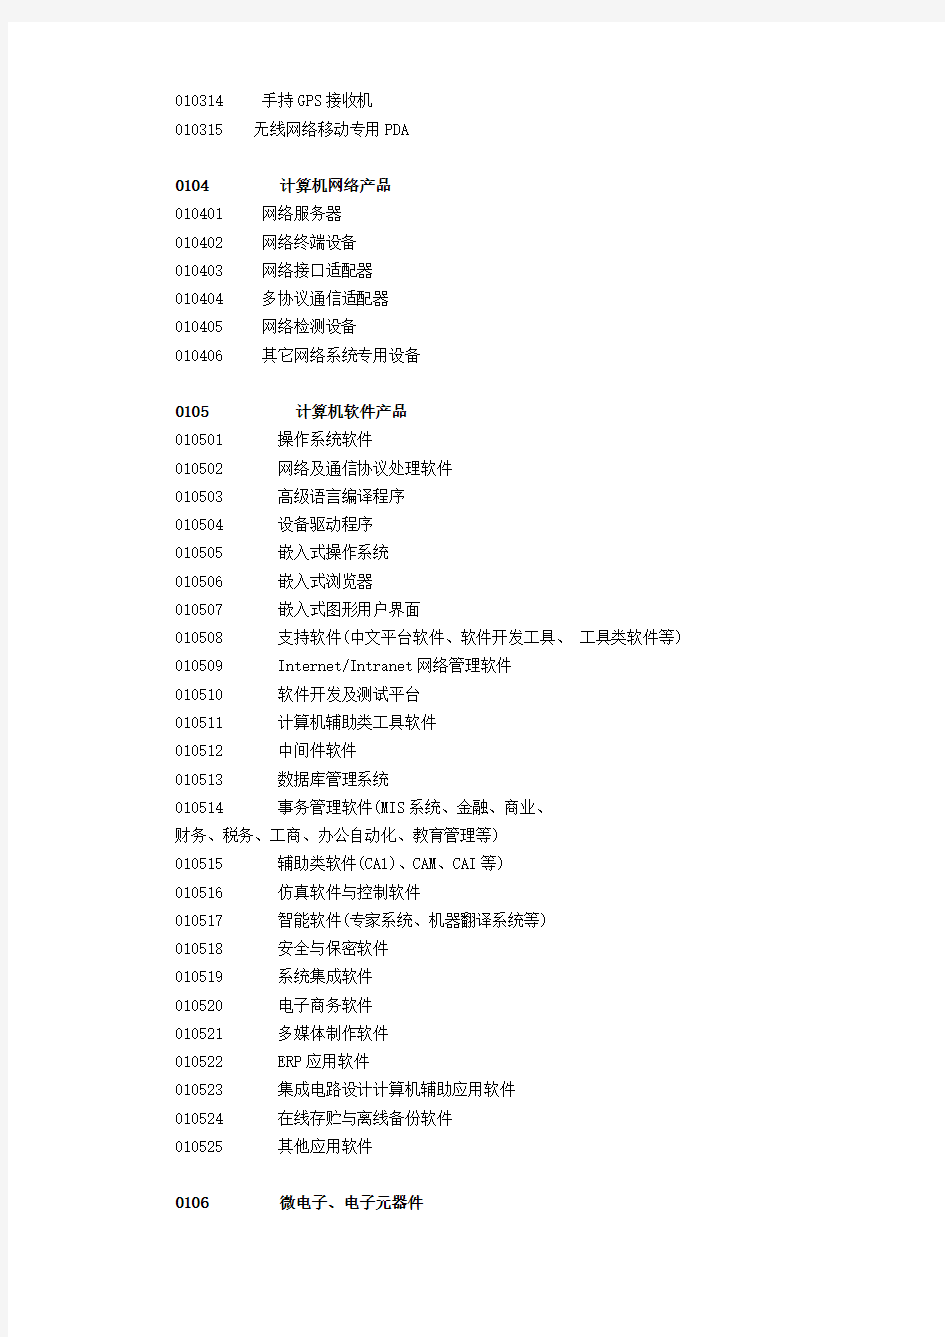 深圳市高新技术产品目录(2005)